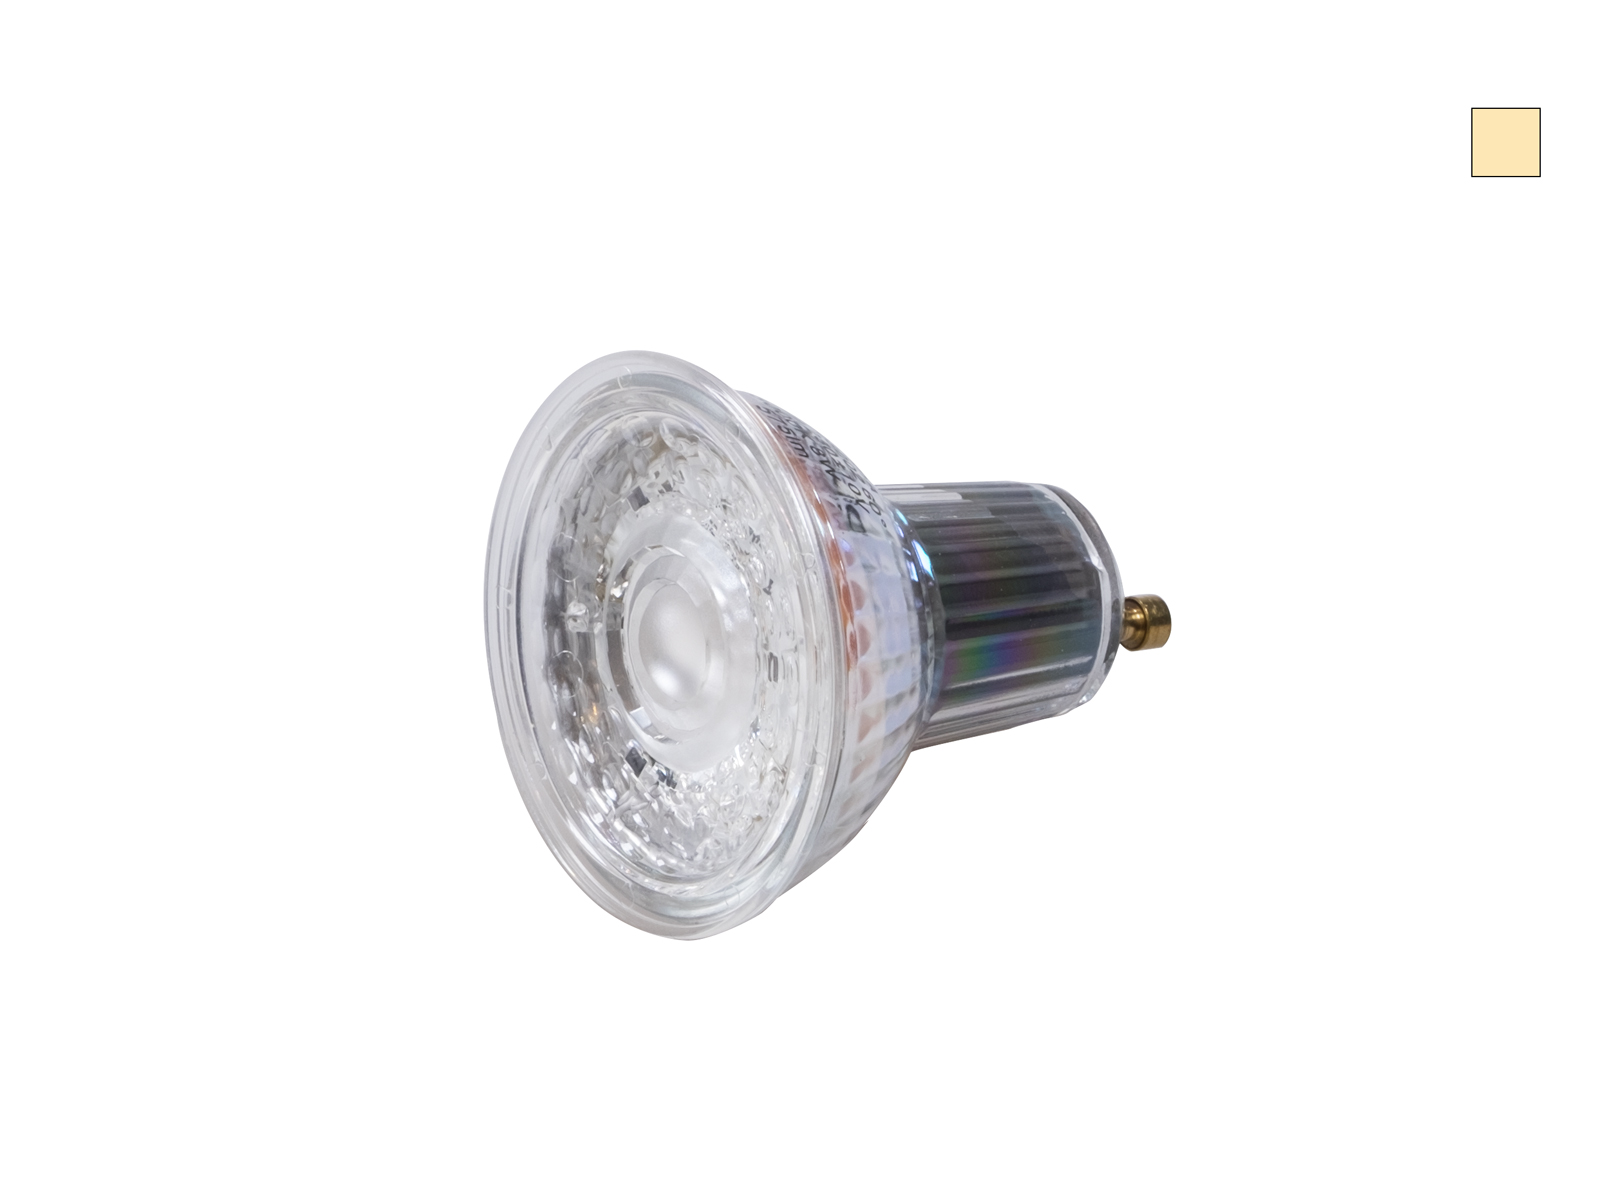 GU10 LED Spot dimmbar 230V 8W Osram Parathom warmweiß kaufen | PUR-LED